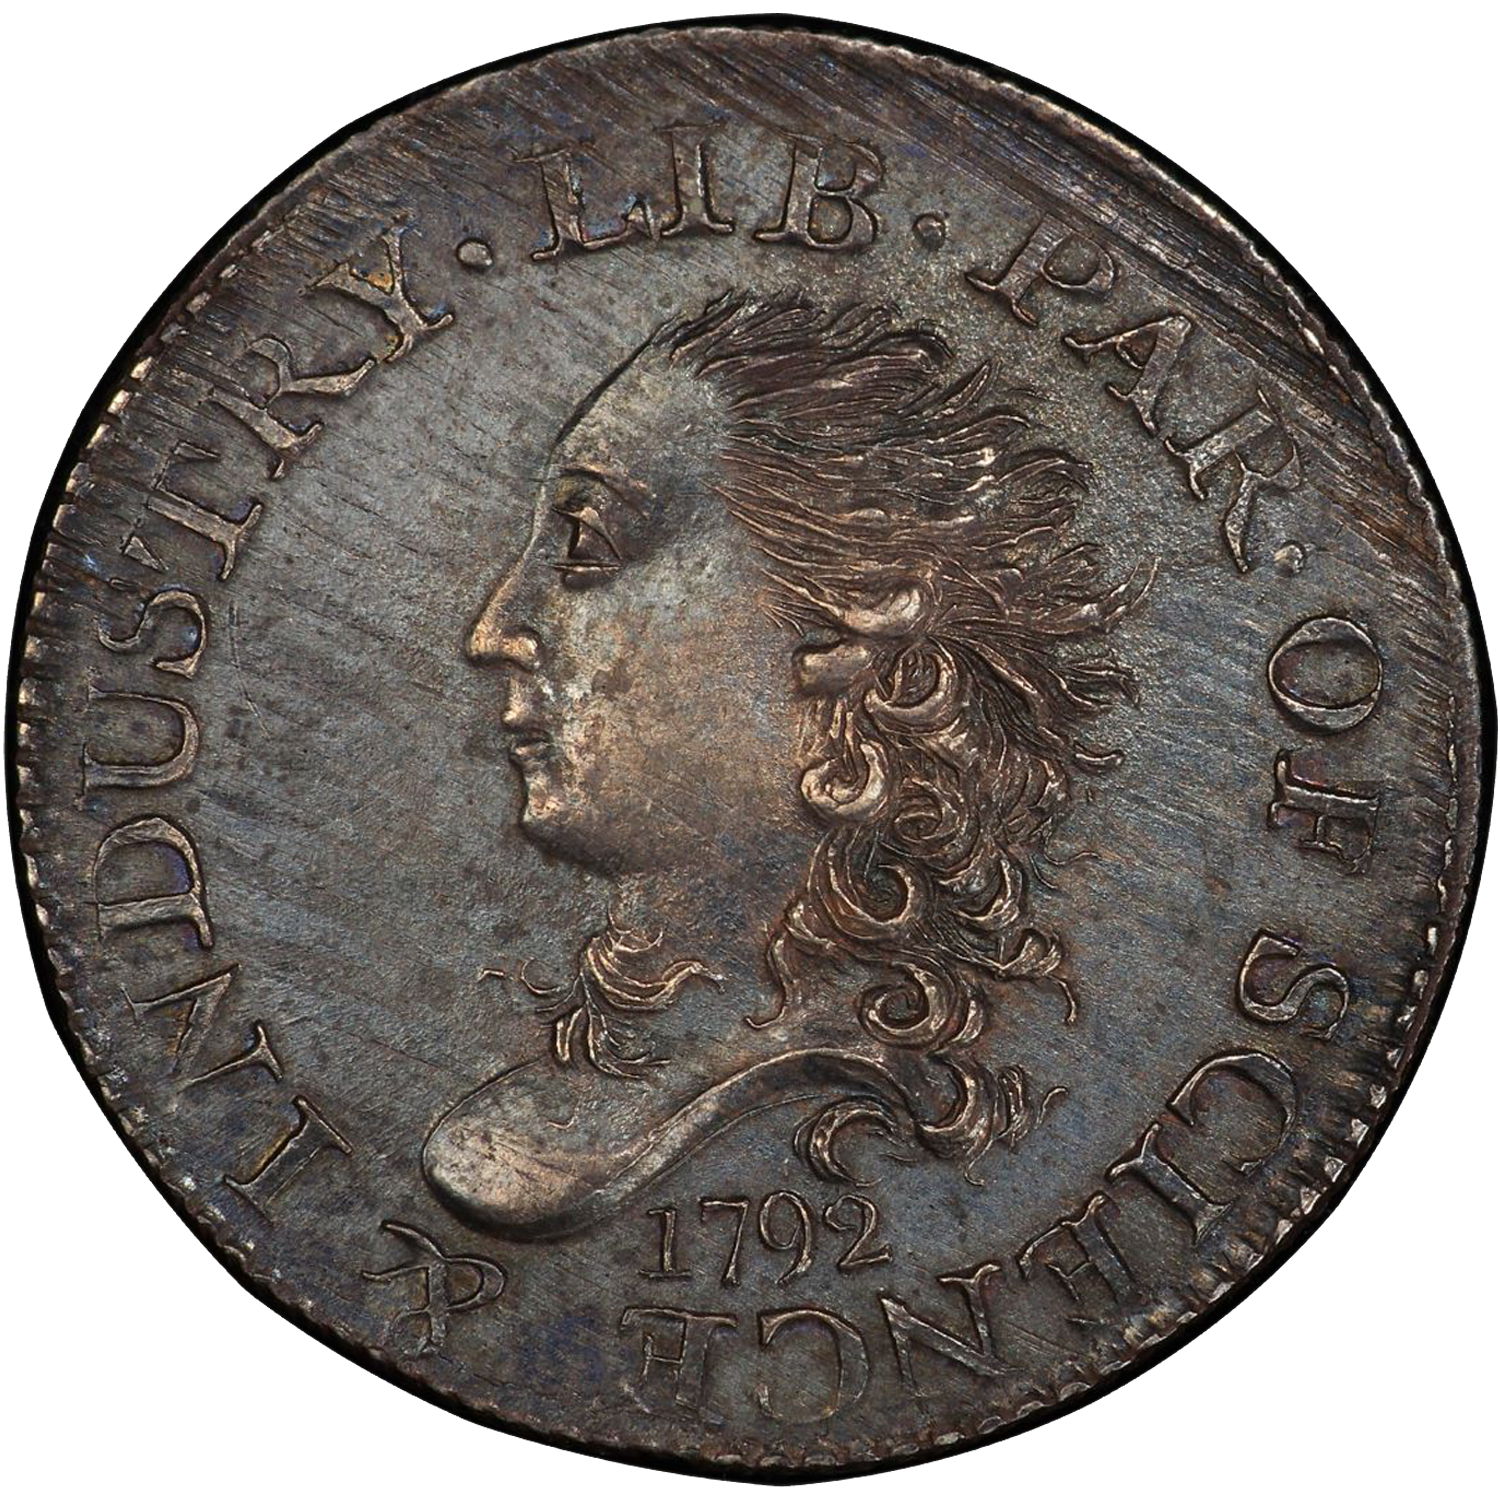 1792 silver half disme value guide